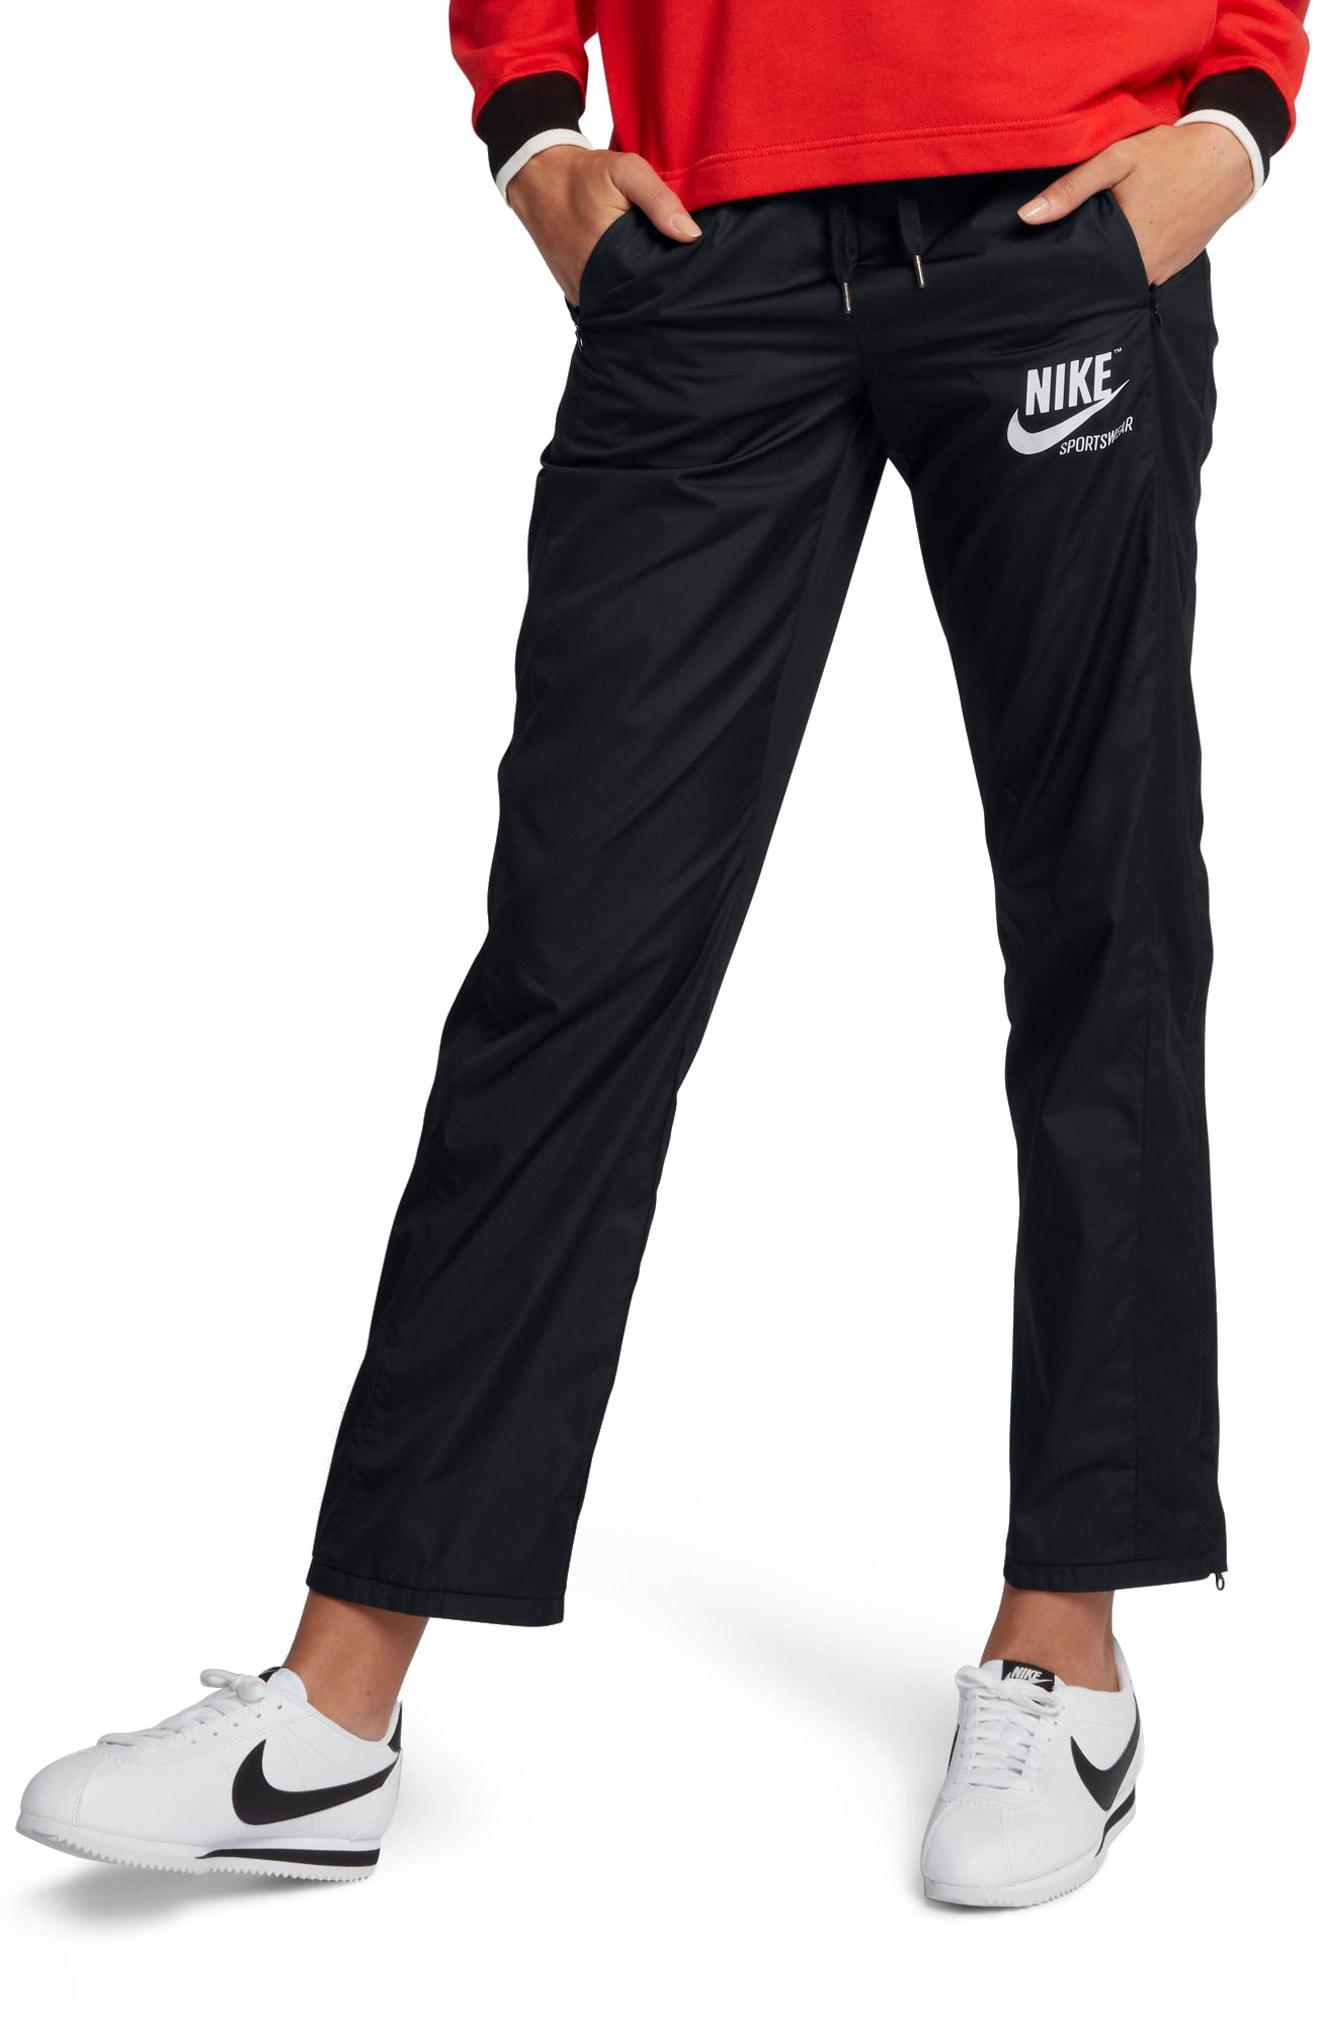 Nike Sportswear Women's Stretch Faille Pants in Black - Lyst